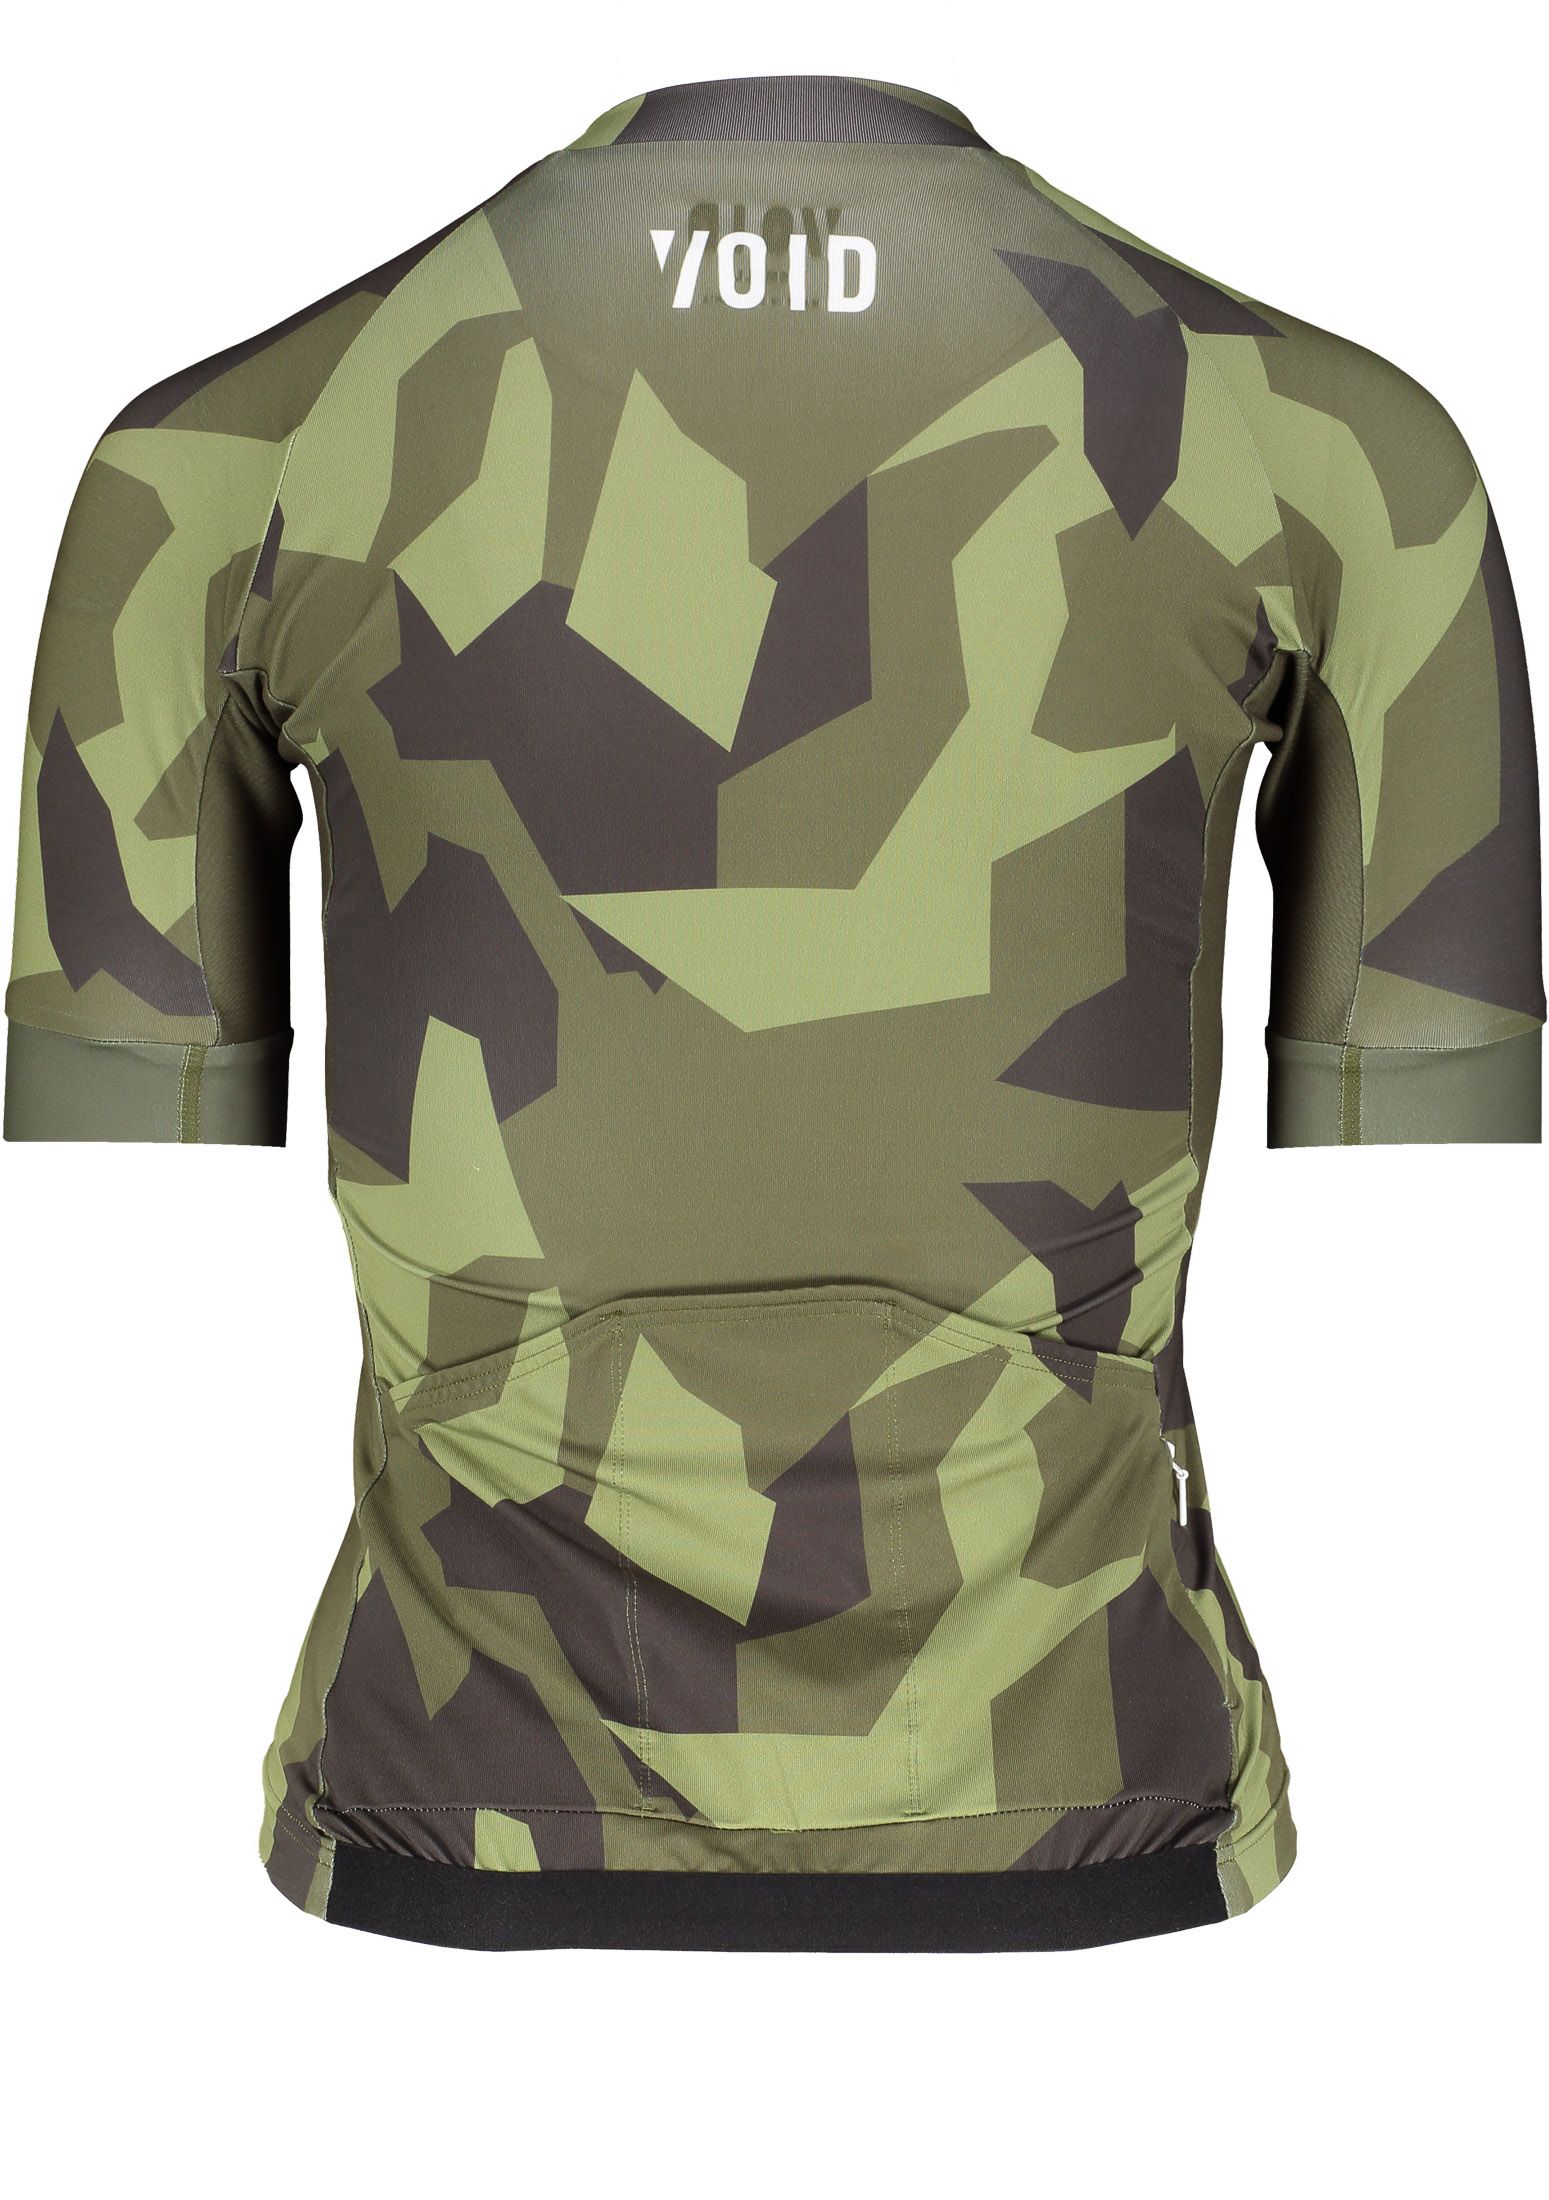 print-jersey-olive-shield03